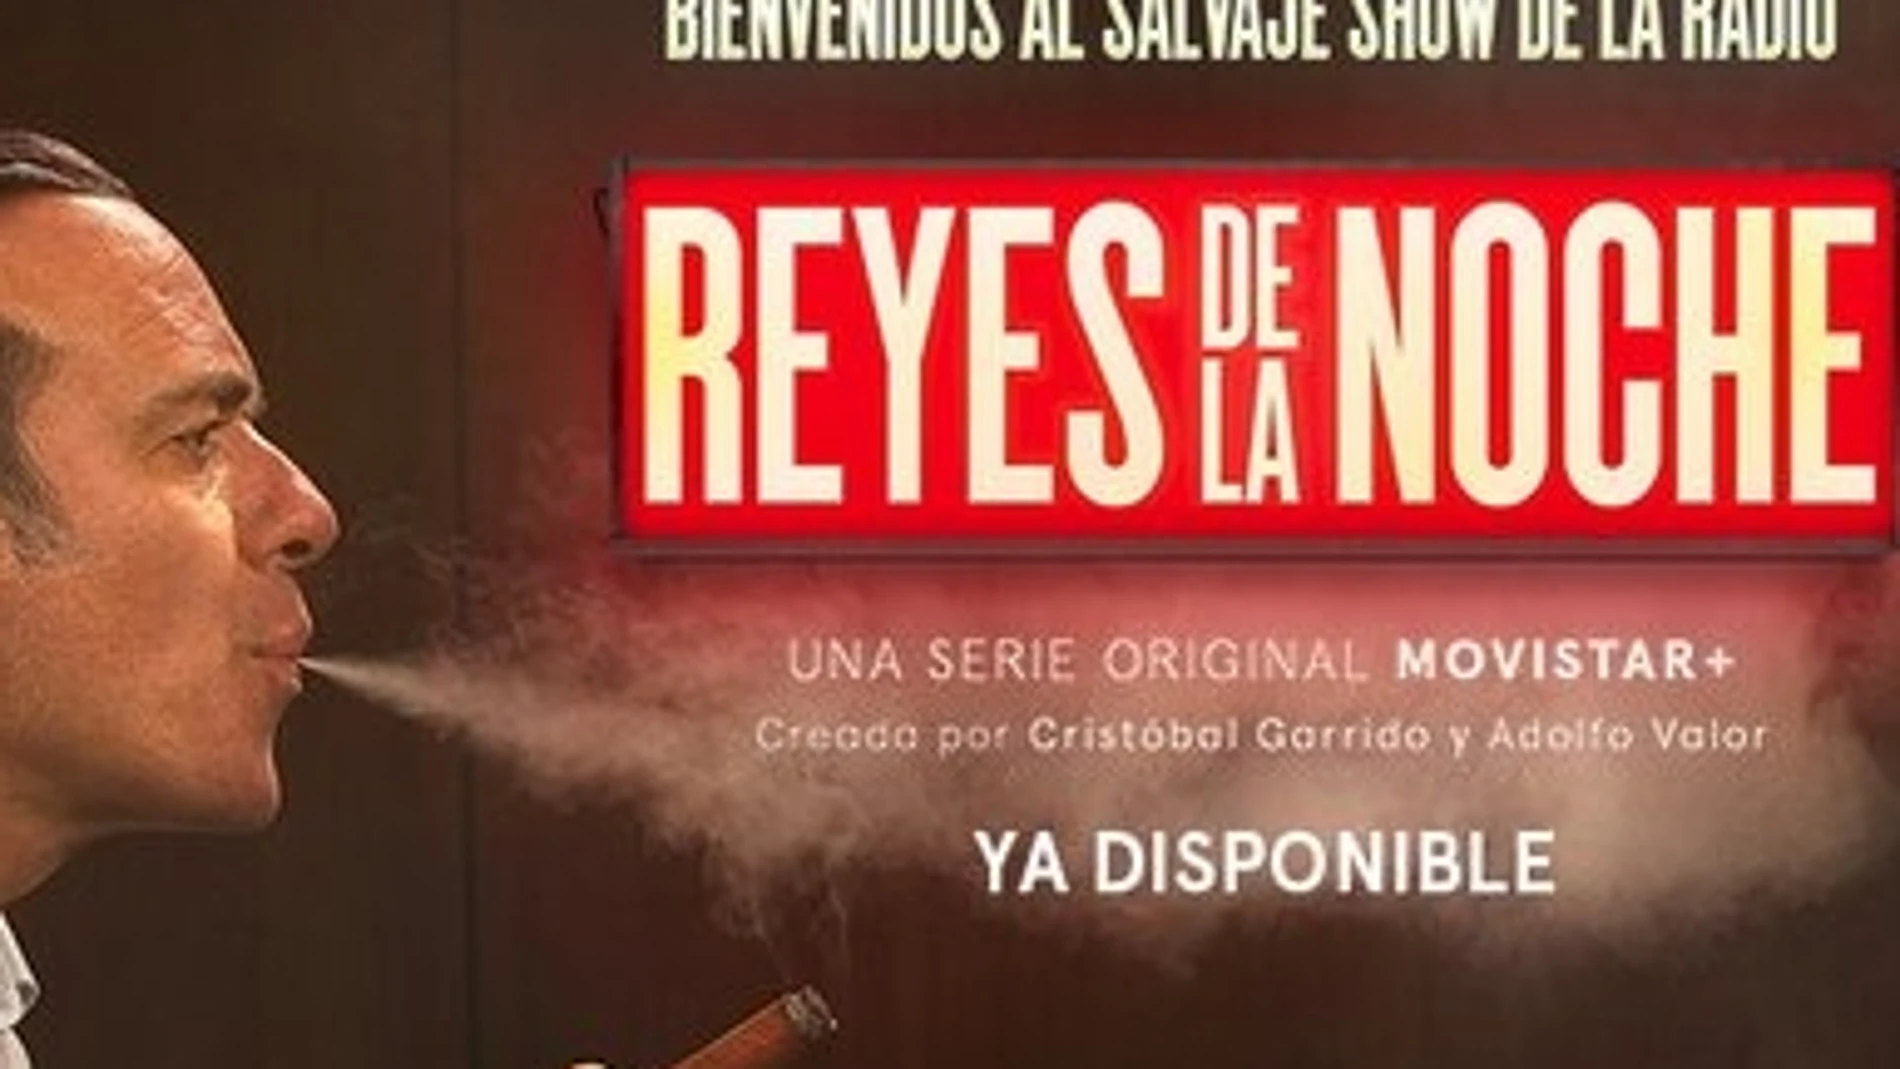 La serie Reyes de la Noche evoca la rivalidad entre De la Morena y García